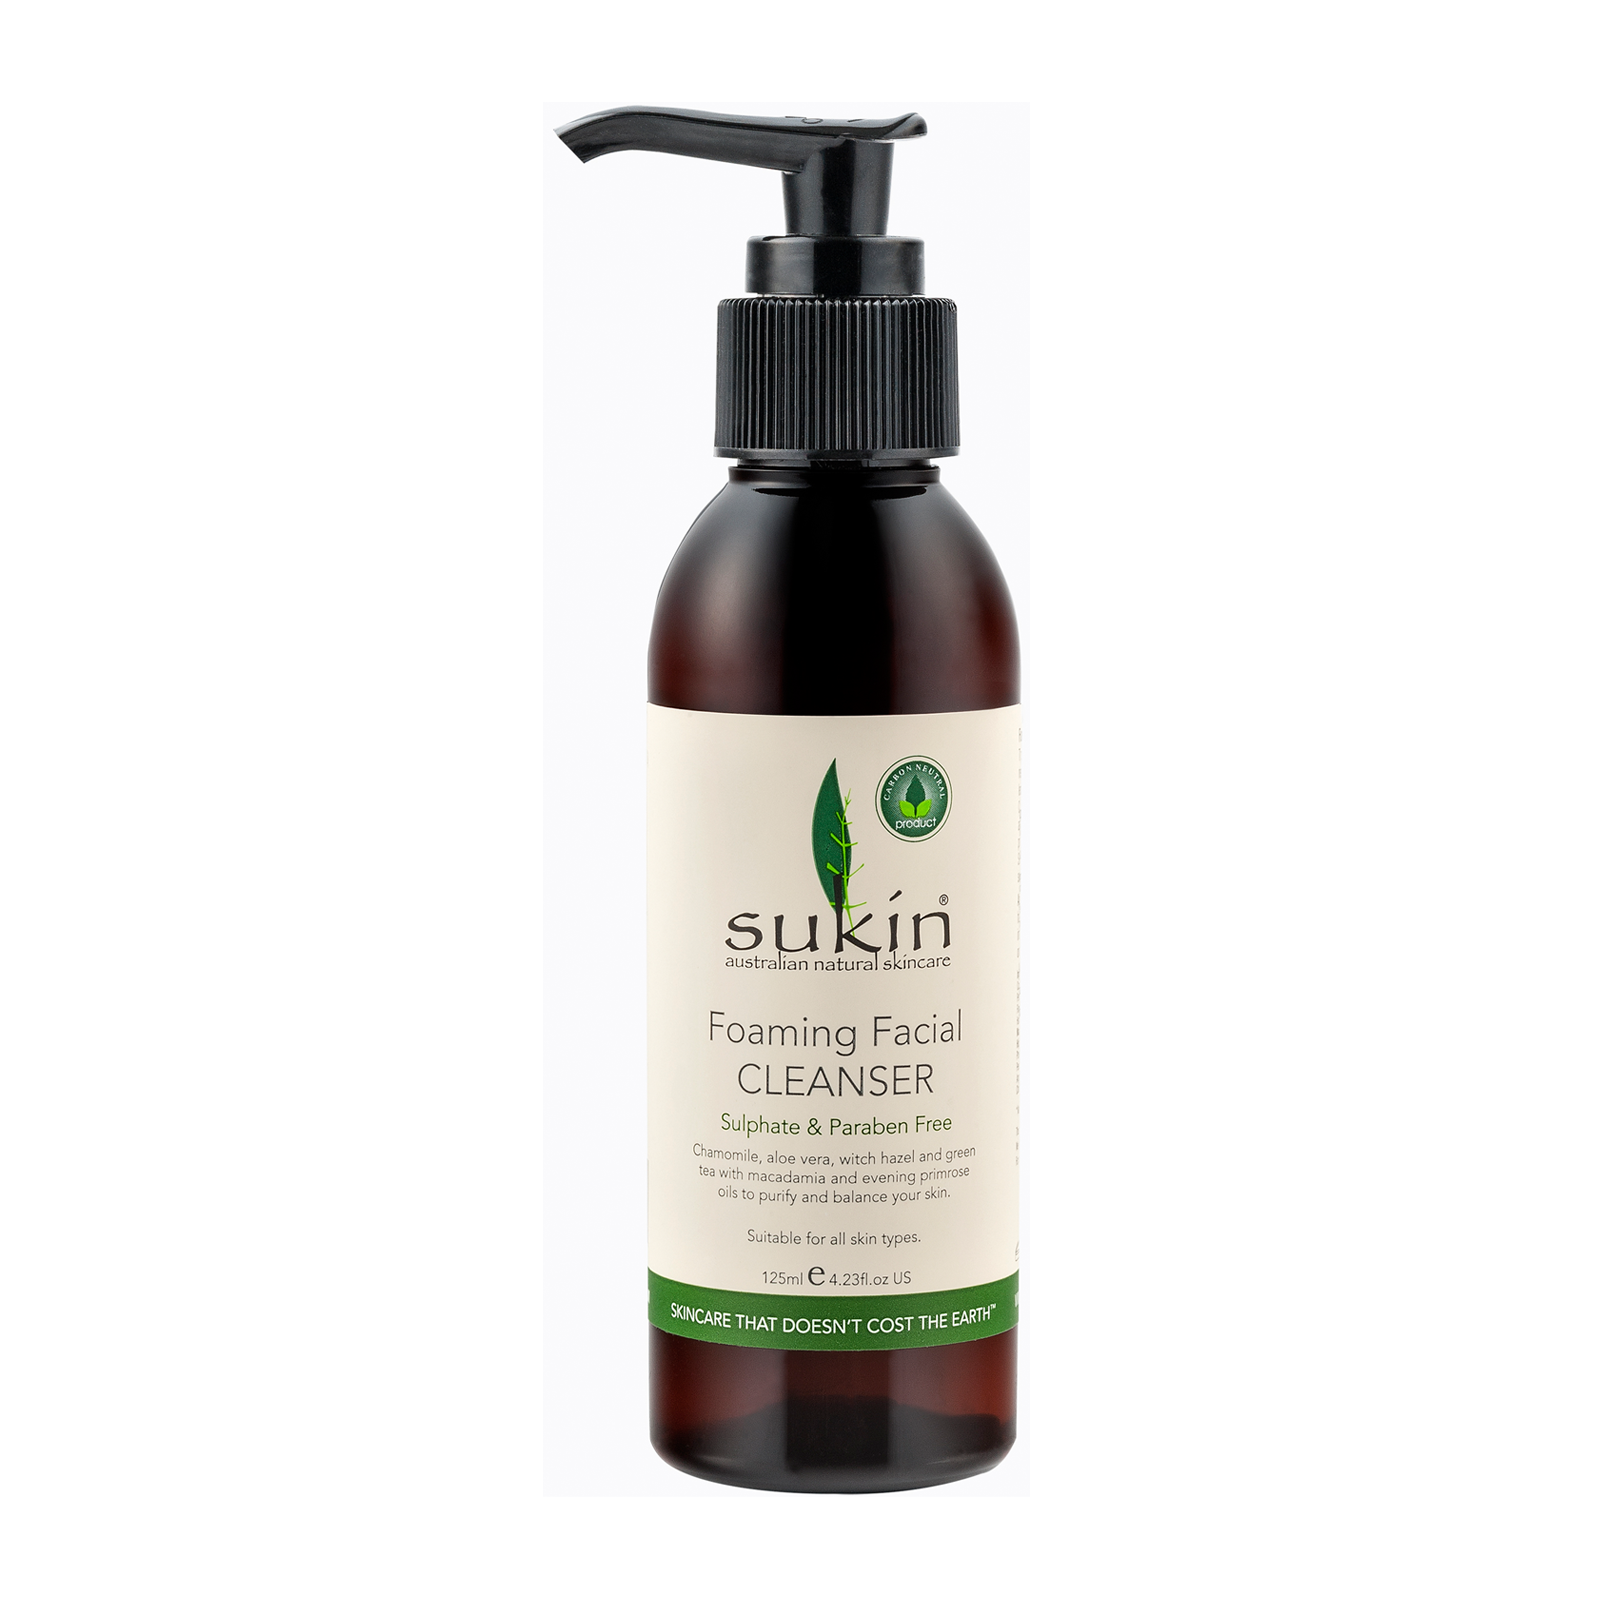 Sukin 苏芊 天然植物泡沫洗面奶 带泵装 125ml 油性 混合性肌肤